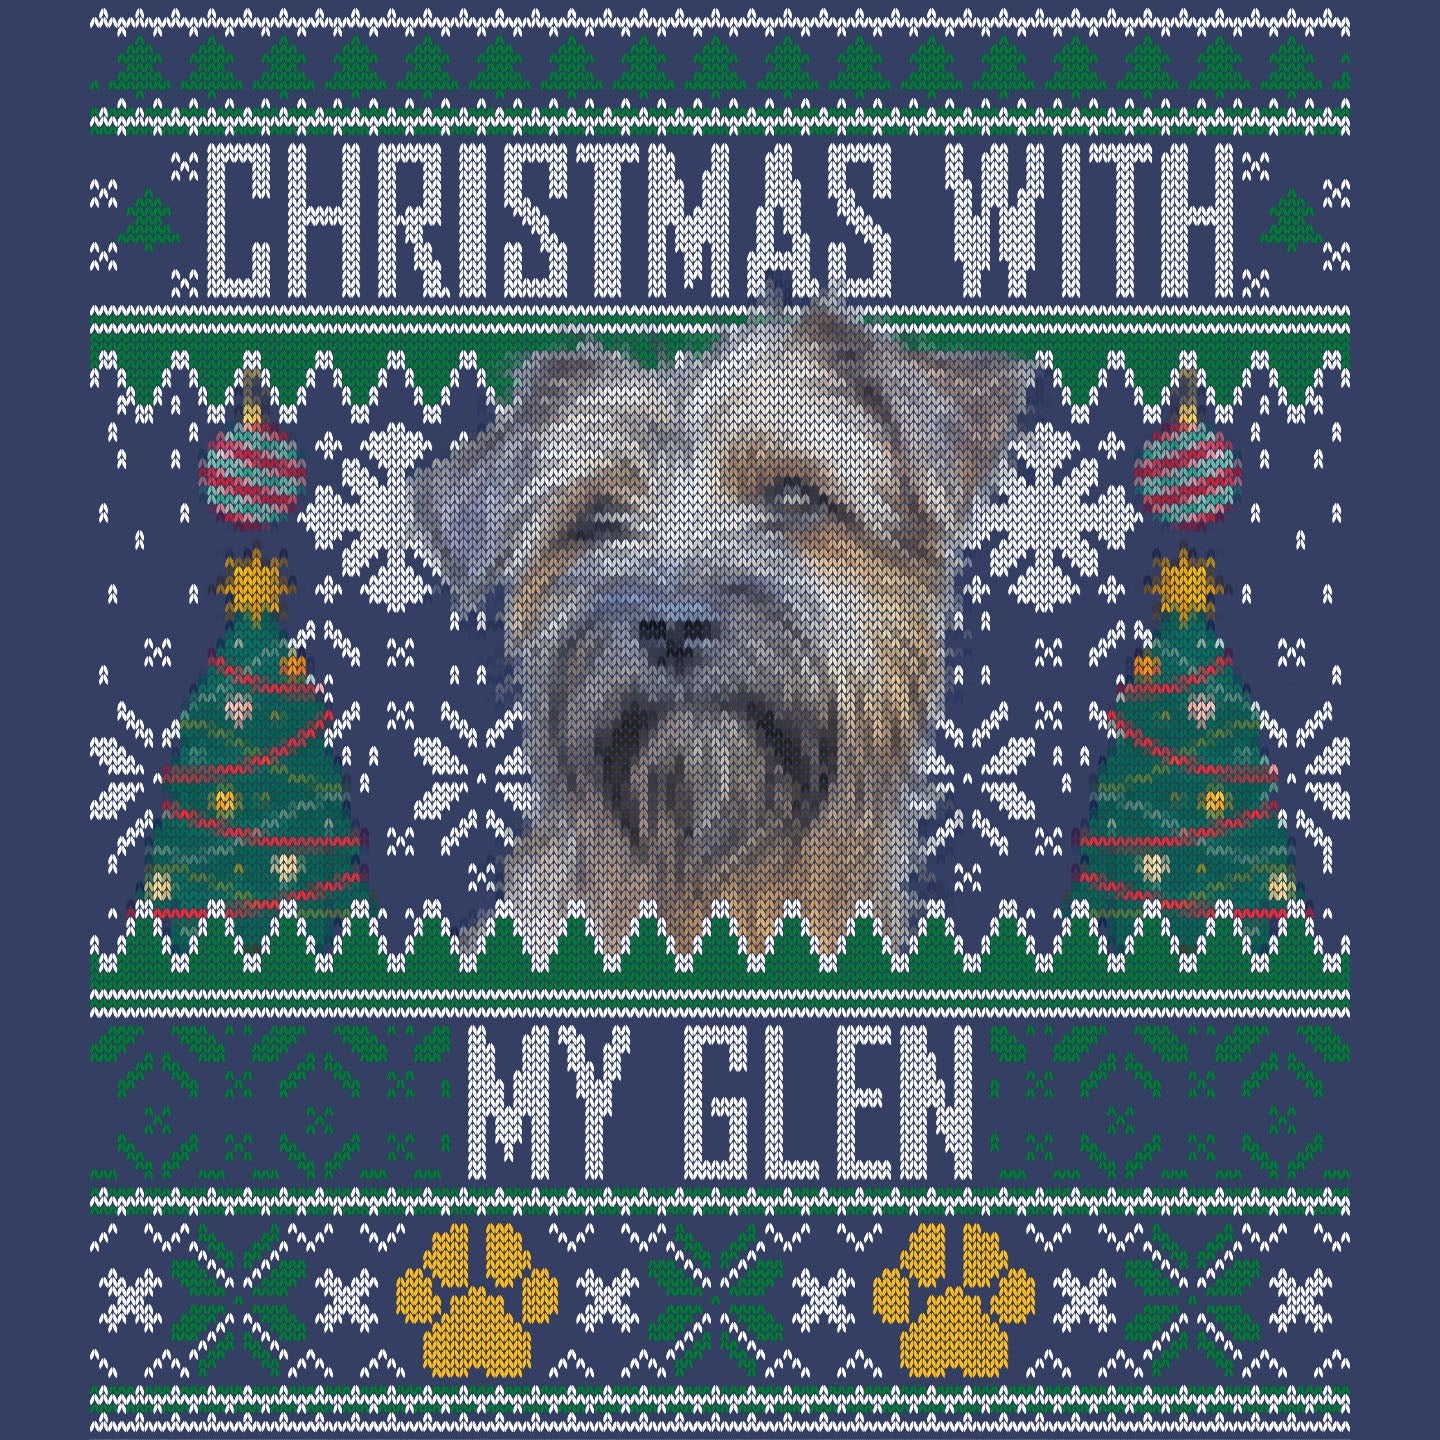 Ugly Sweater Christmas with My Glen of Imaal Terrier - Adult Unisex Crewneck Sweatshirt